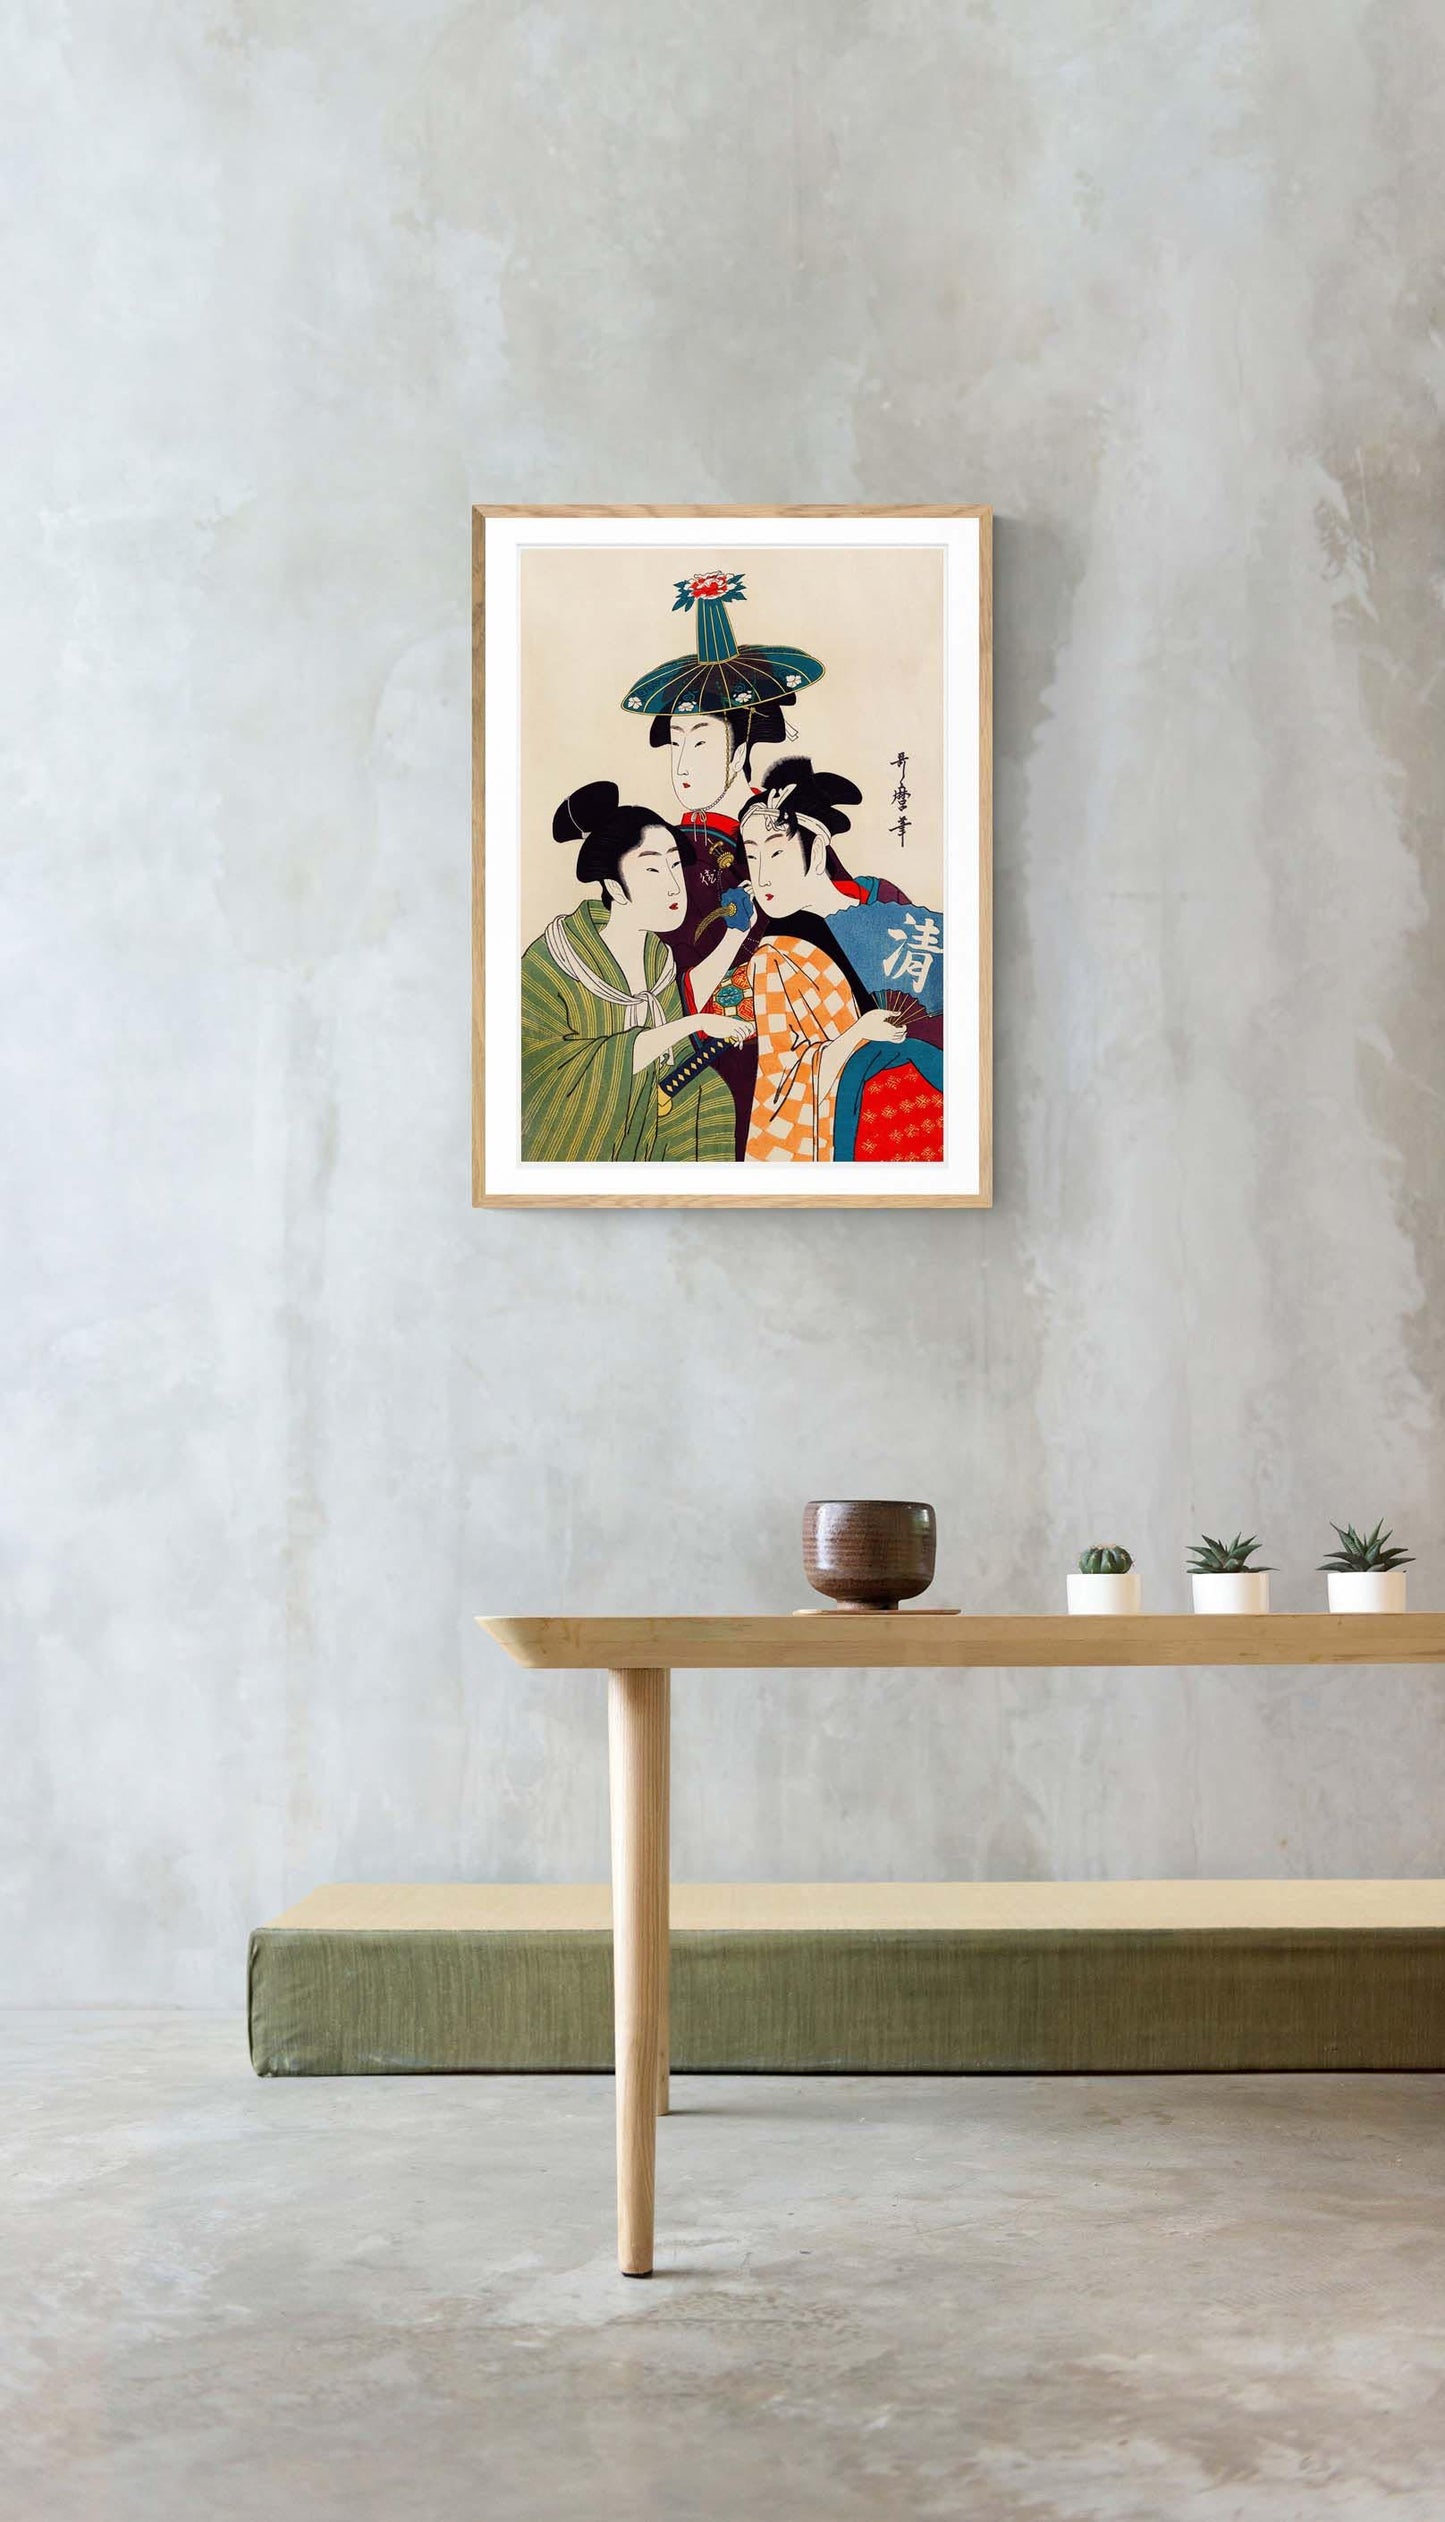 3 Geishas and a Blue Hat by Kitagawa